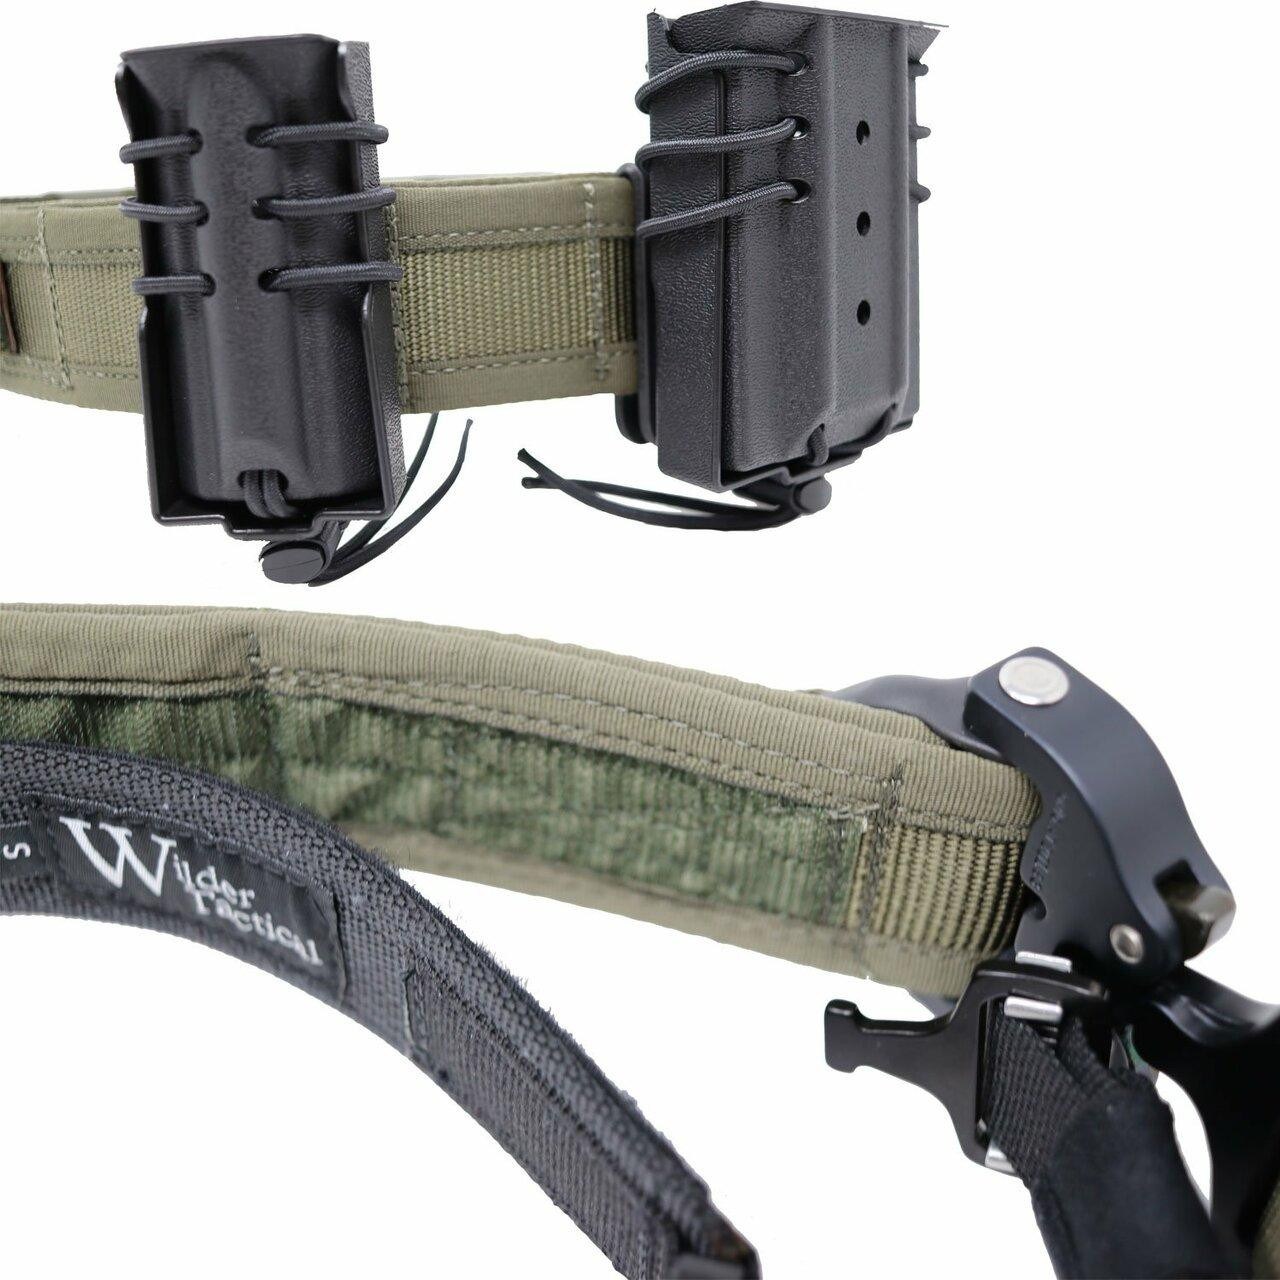 Wilder tactical battle belt : r/P320